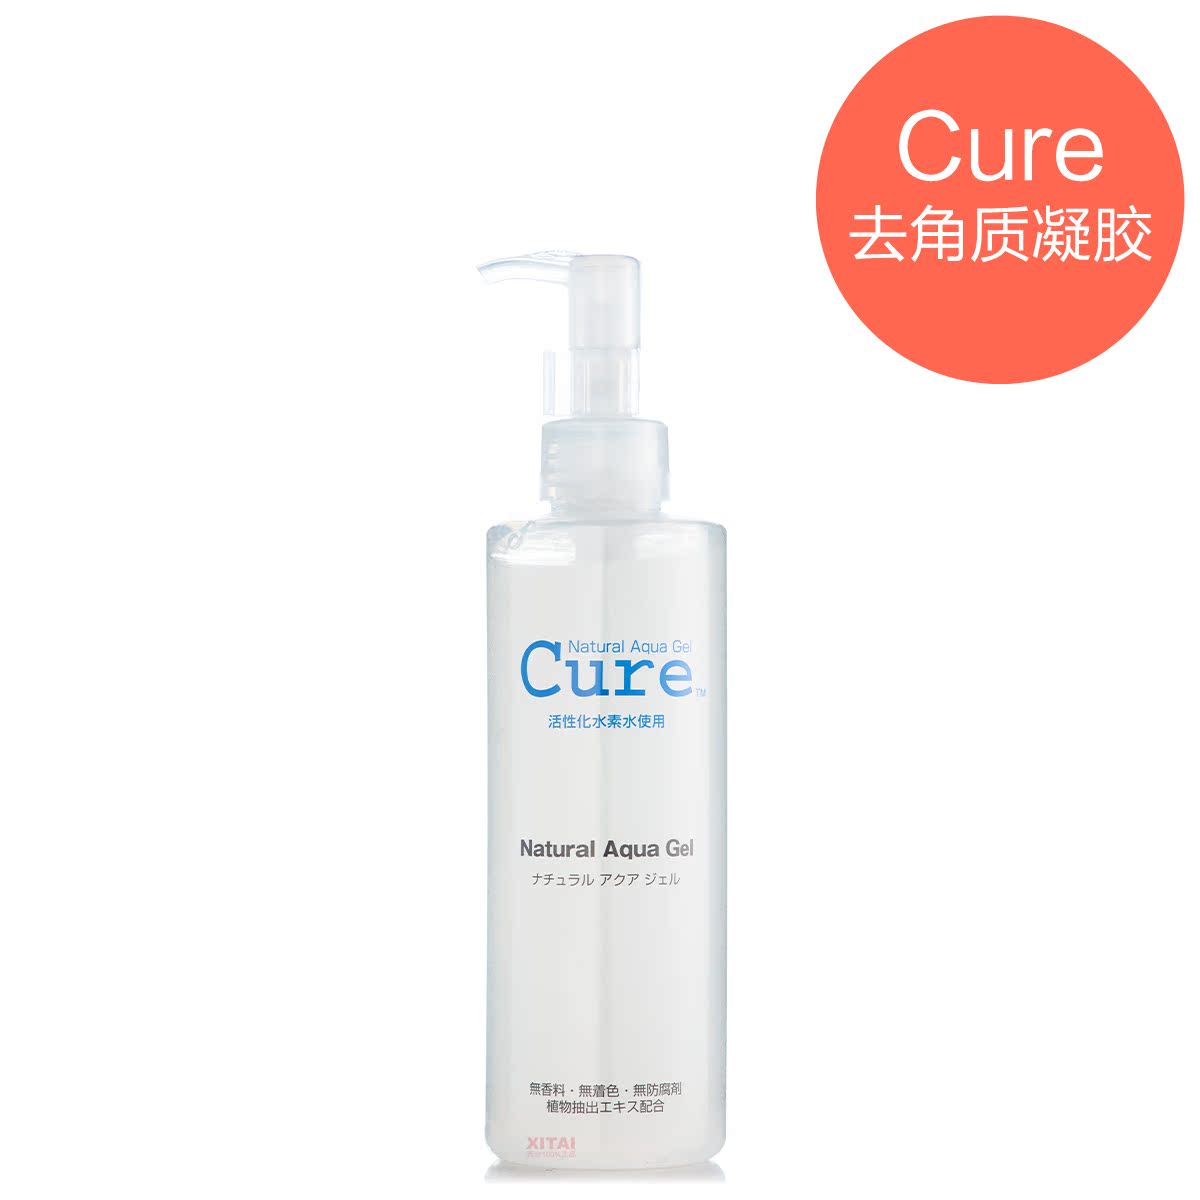 日本 Cure 酷雅活性化水素去角质啫哩凝胶 250g 敏感肌可用去死皮